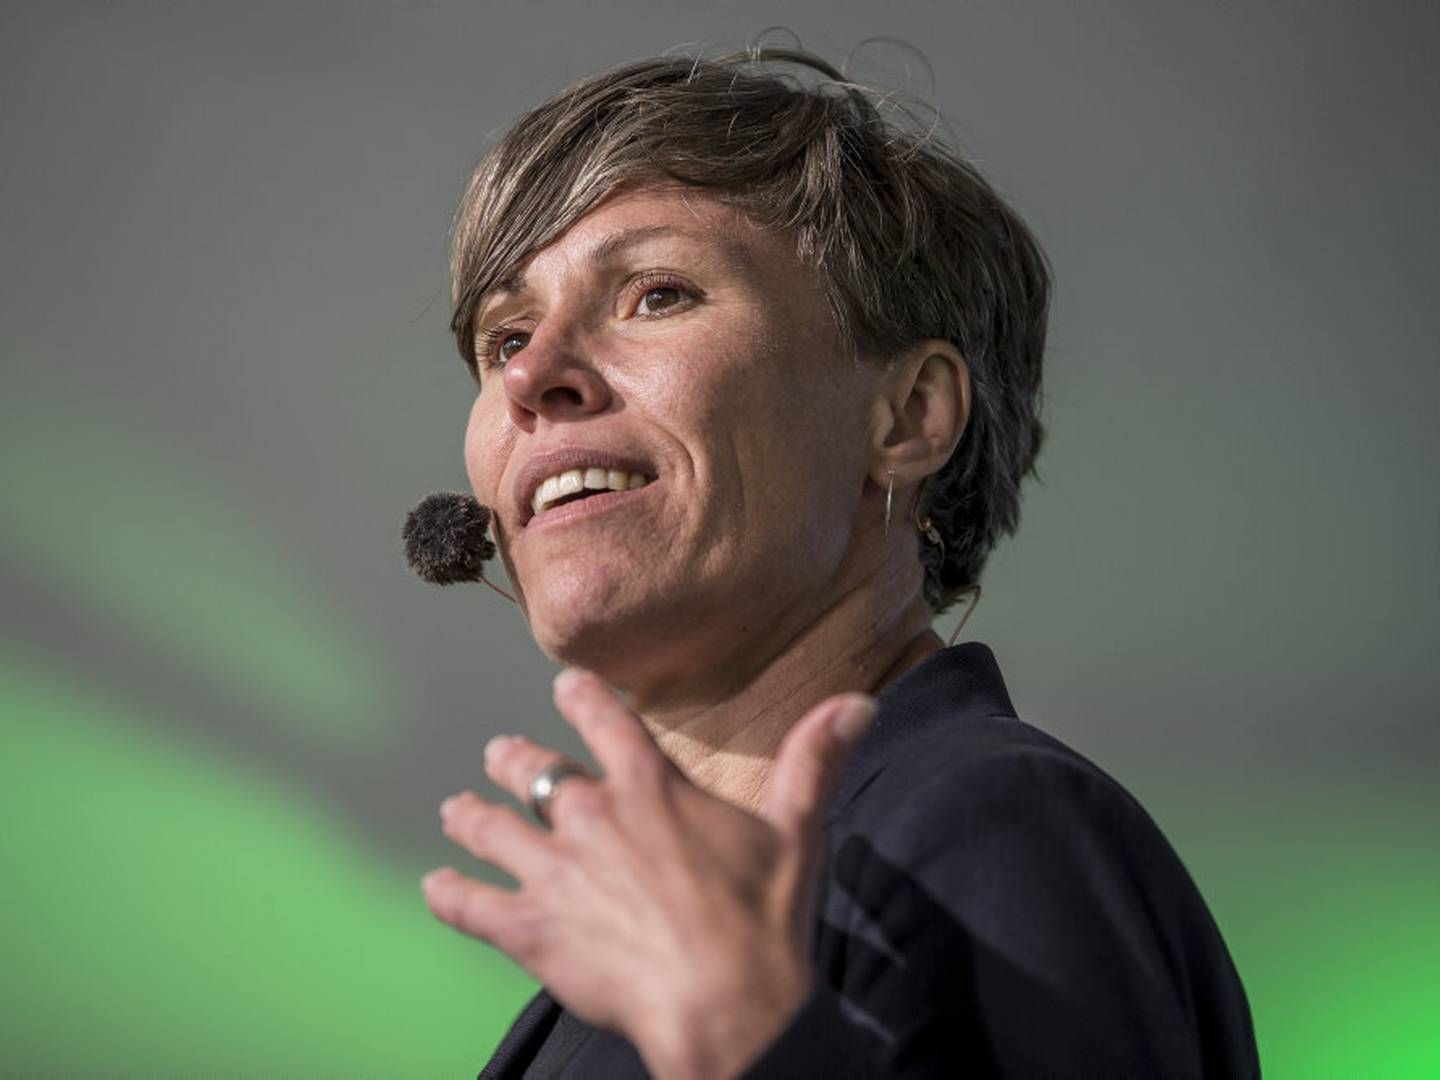 Winni Grosbøll afløser Anja Philip som direktør i Forbrugerrådet Tænk. | Foto: Mads Claus Rasmussen/Ritzau Scanpix